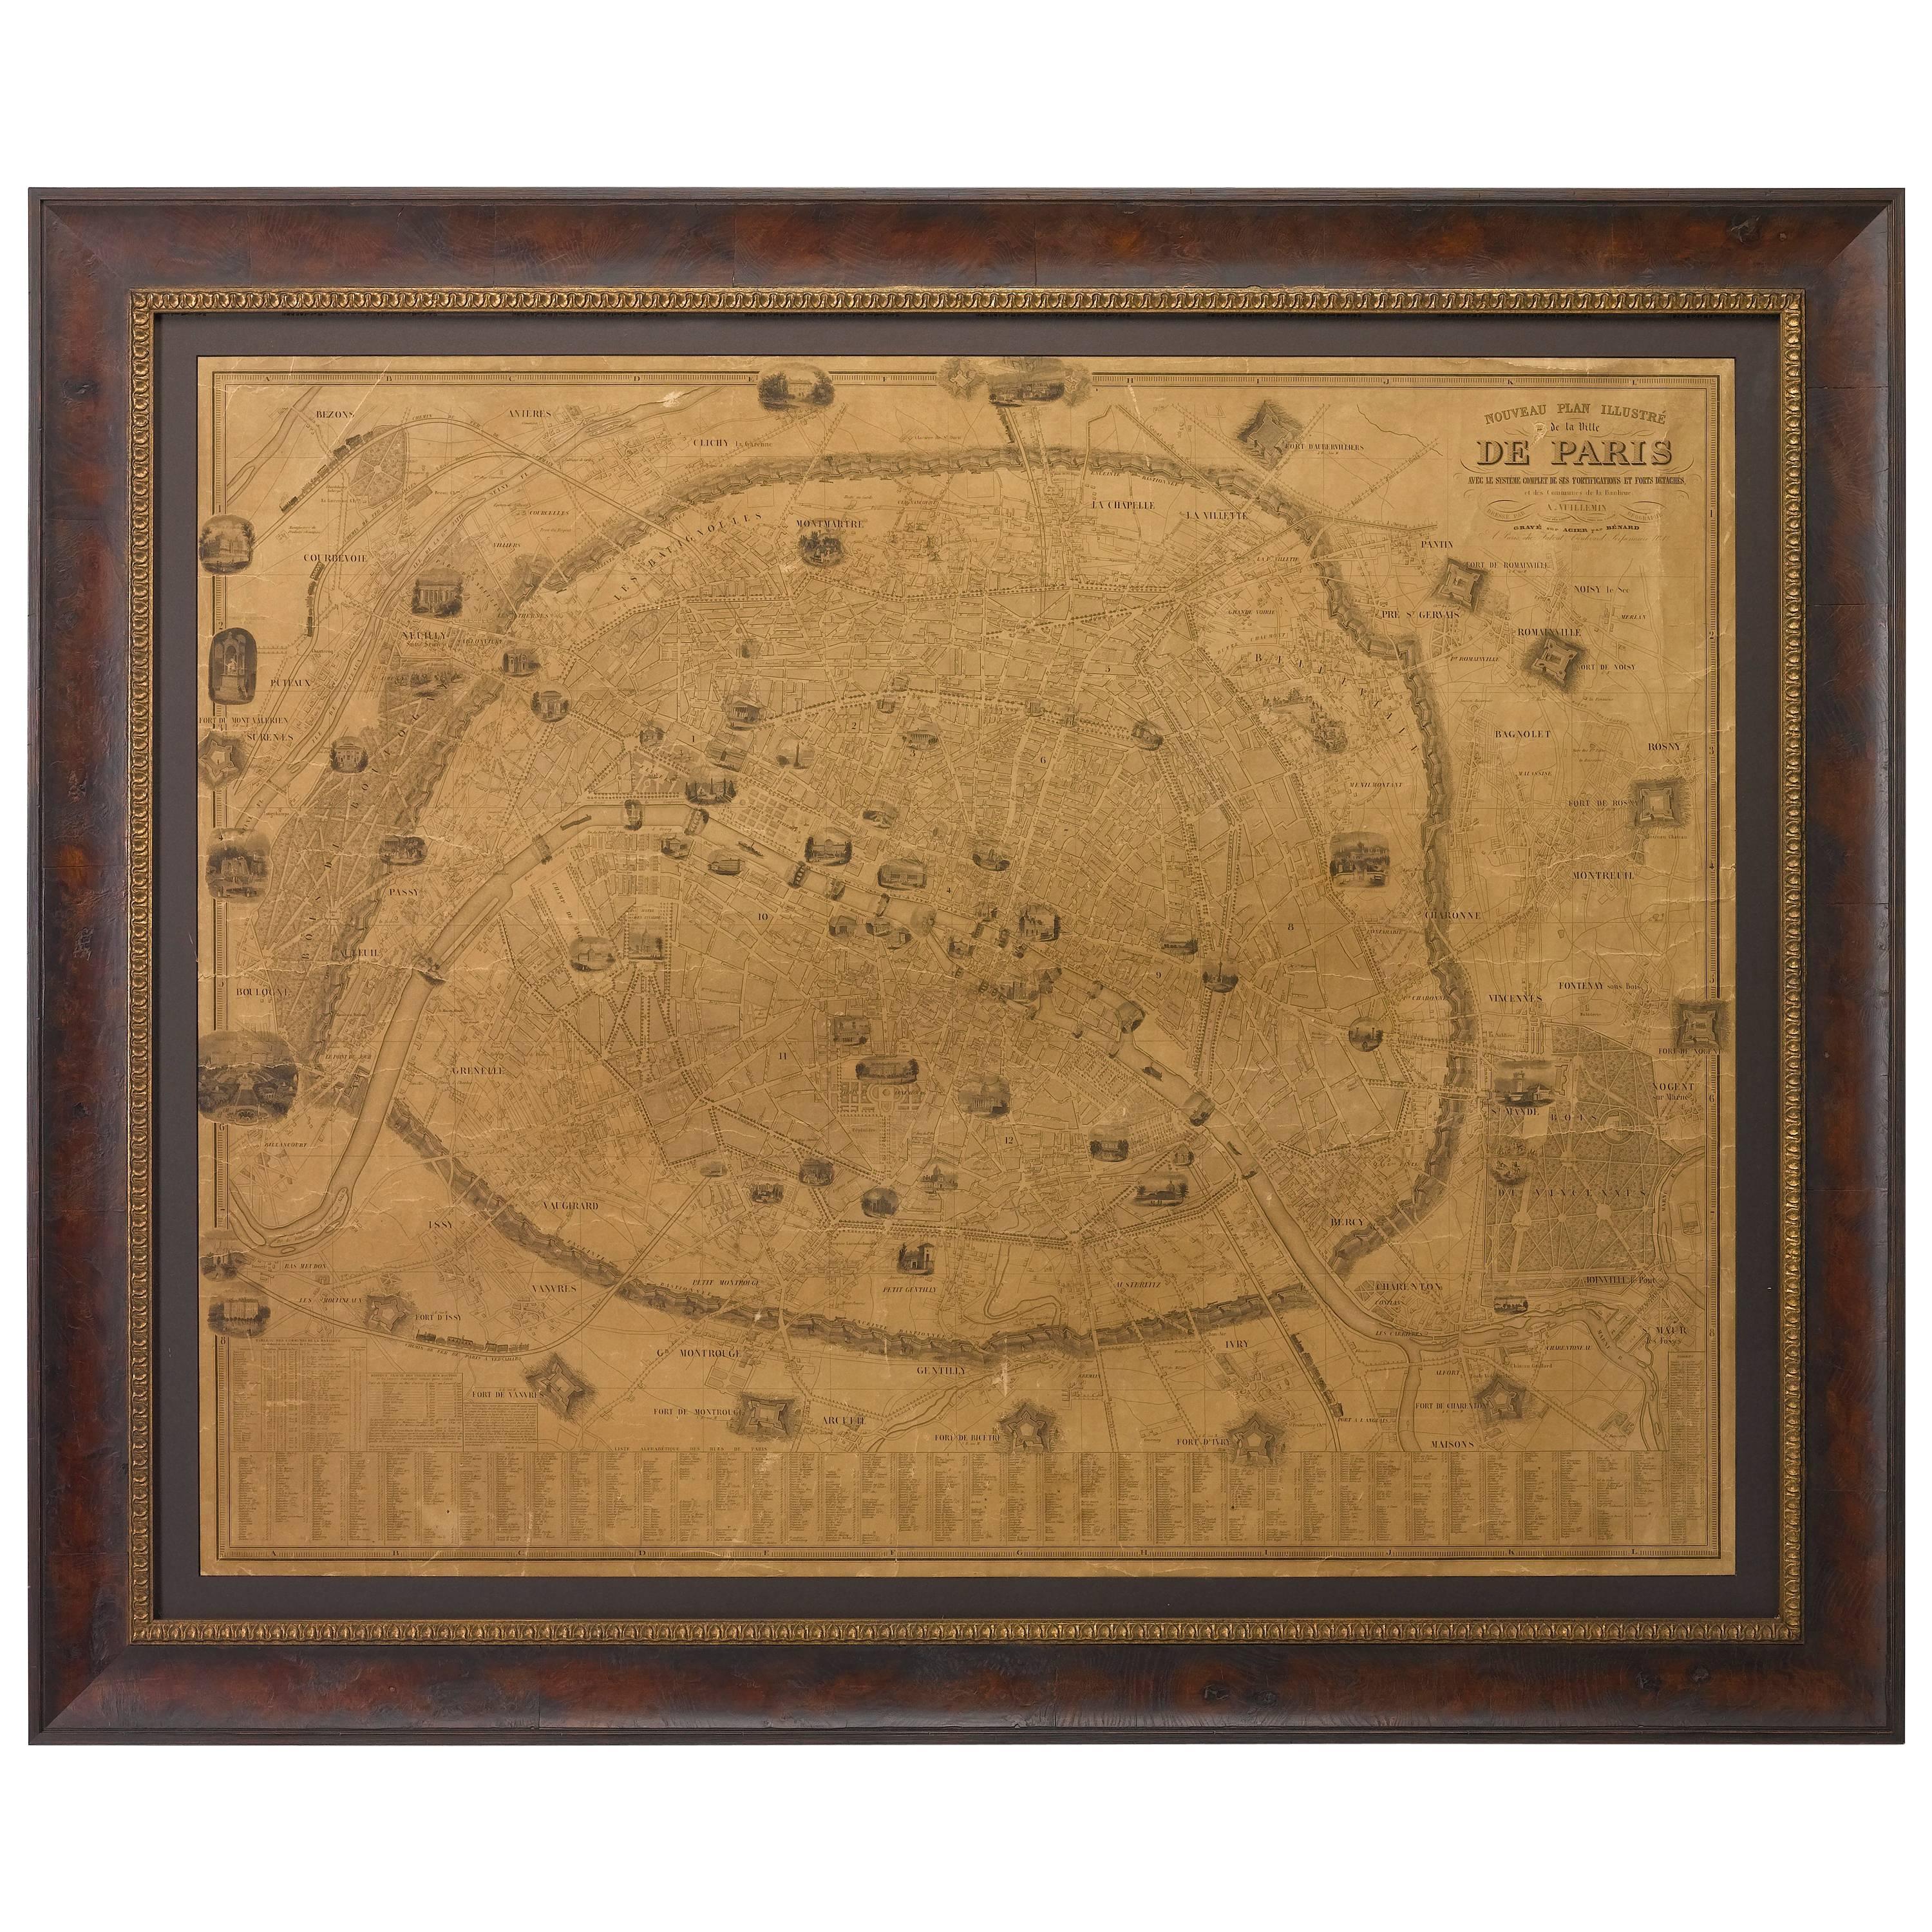 Plan of Paris, France, by A. Vuillemin, Antique Map, 1845